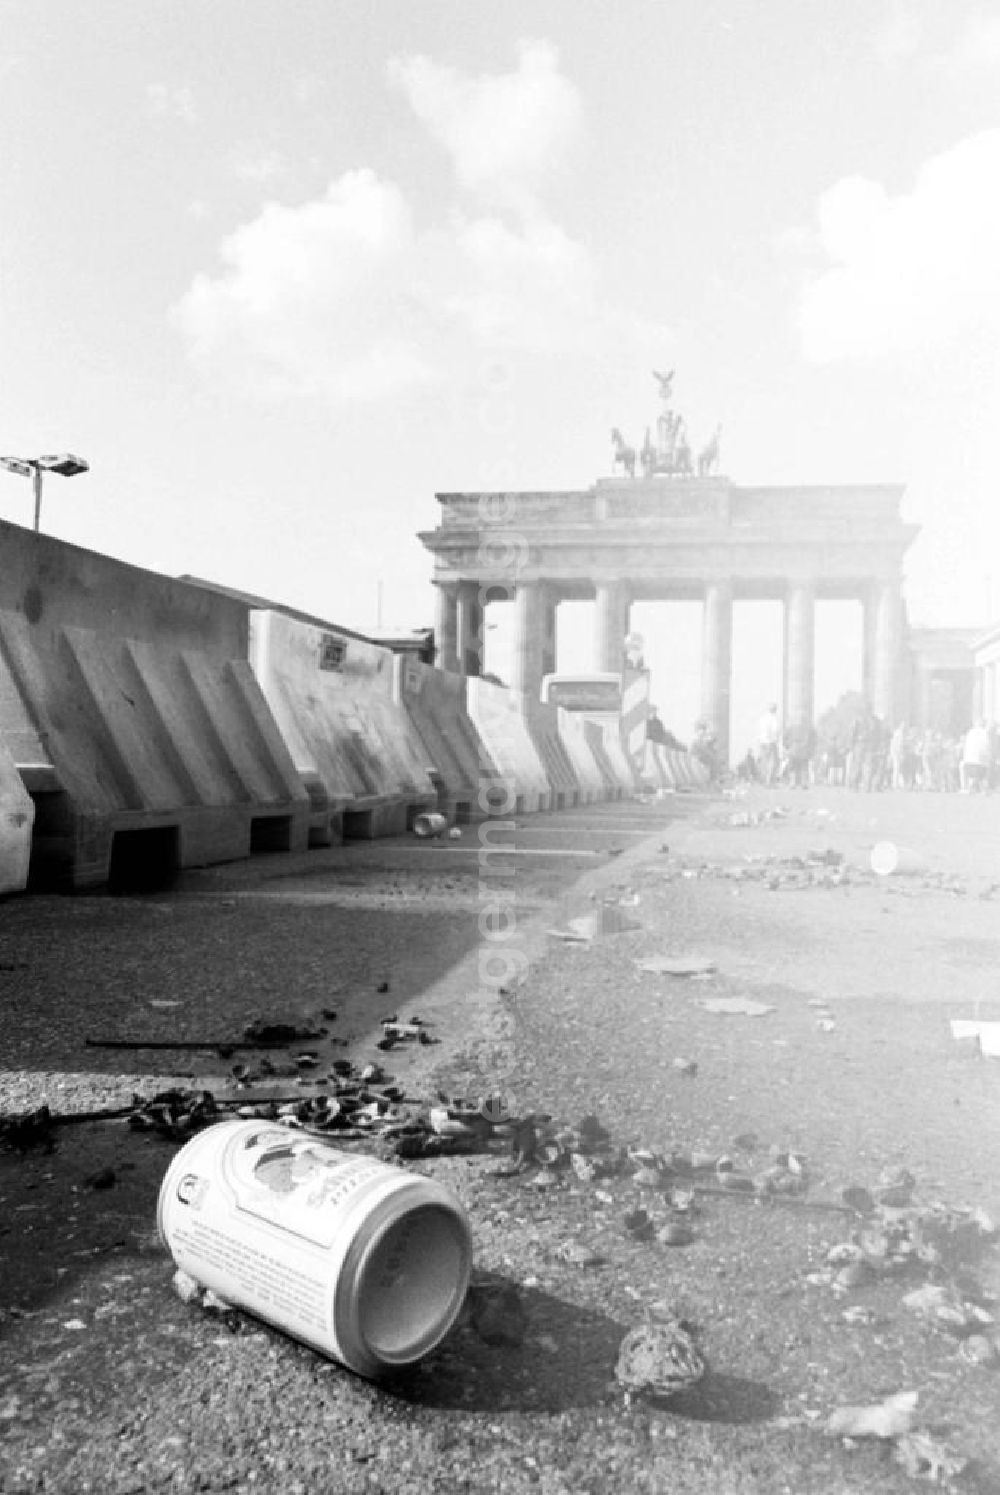 GDR photo archive: Berlin-Mitte Berlin-Tiergarten - Nah: Bierdose / Büchse auf Boden hinter Straßenabgrenzung vor Brandenburger Tor.